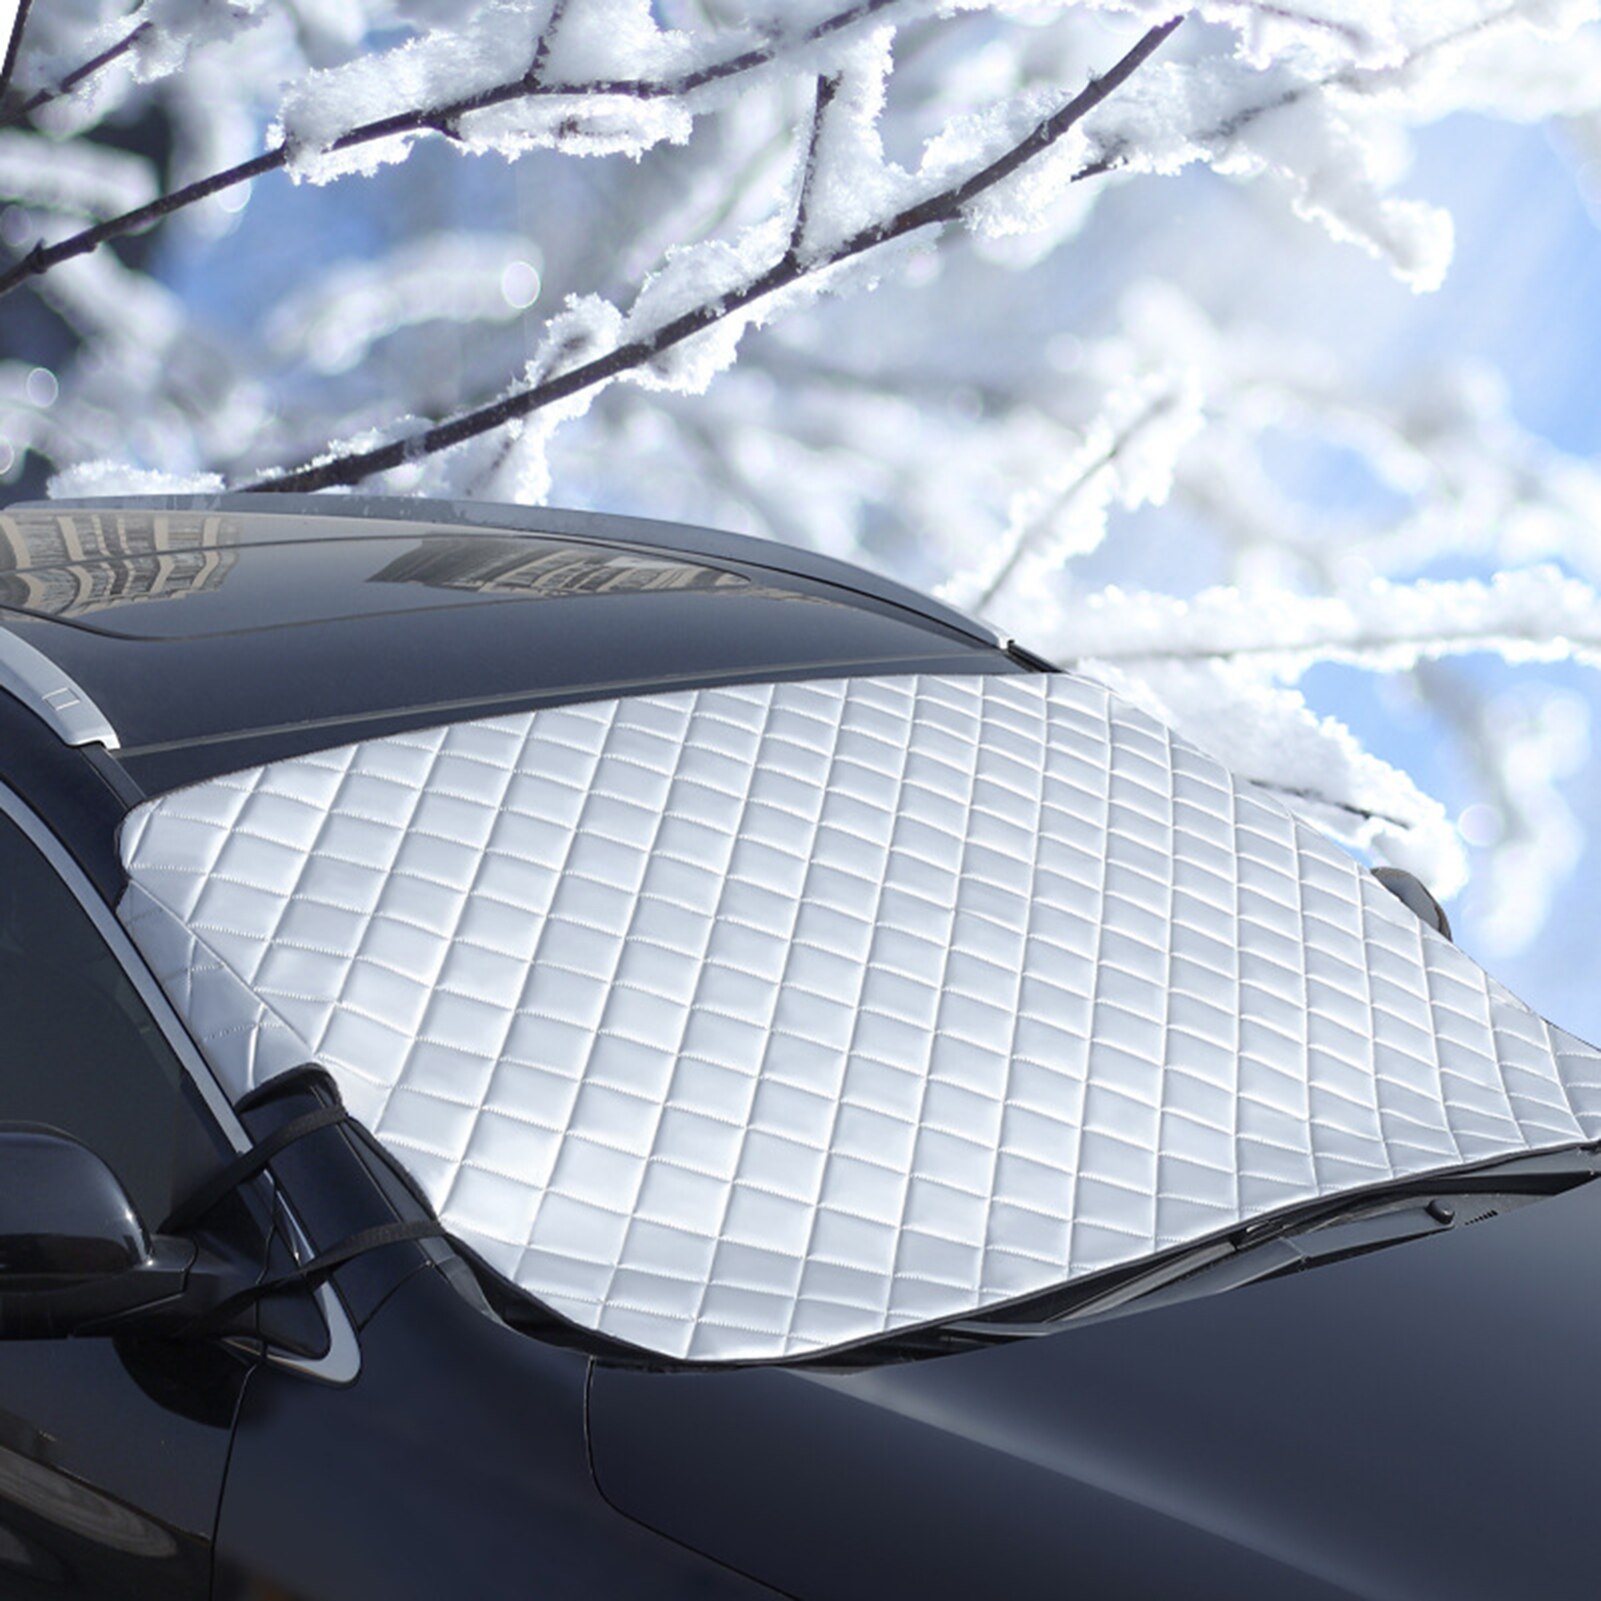 Auto Voorruit Cover Anti Sneeuw Vorst Ijs Voorruit Dust Protector Heat Zonnescherm Ijs Grote Sneeuw Dust Protector Auto Covers